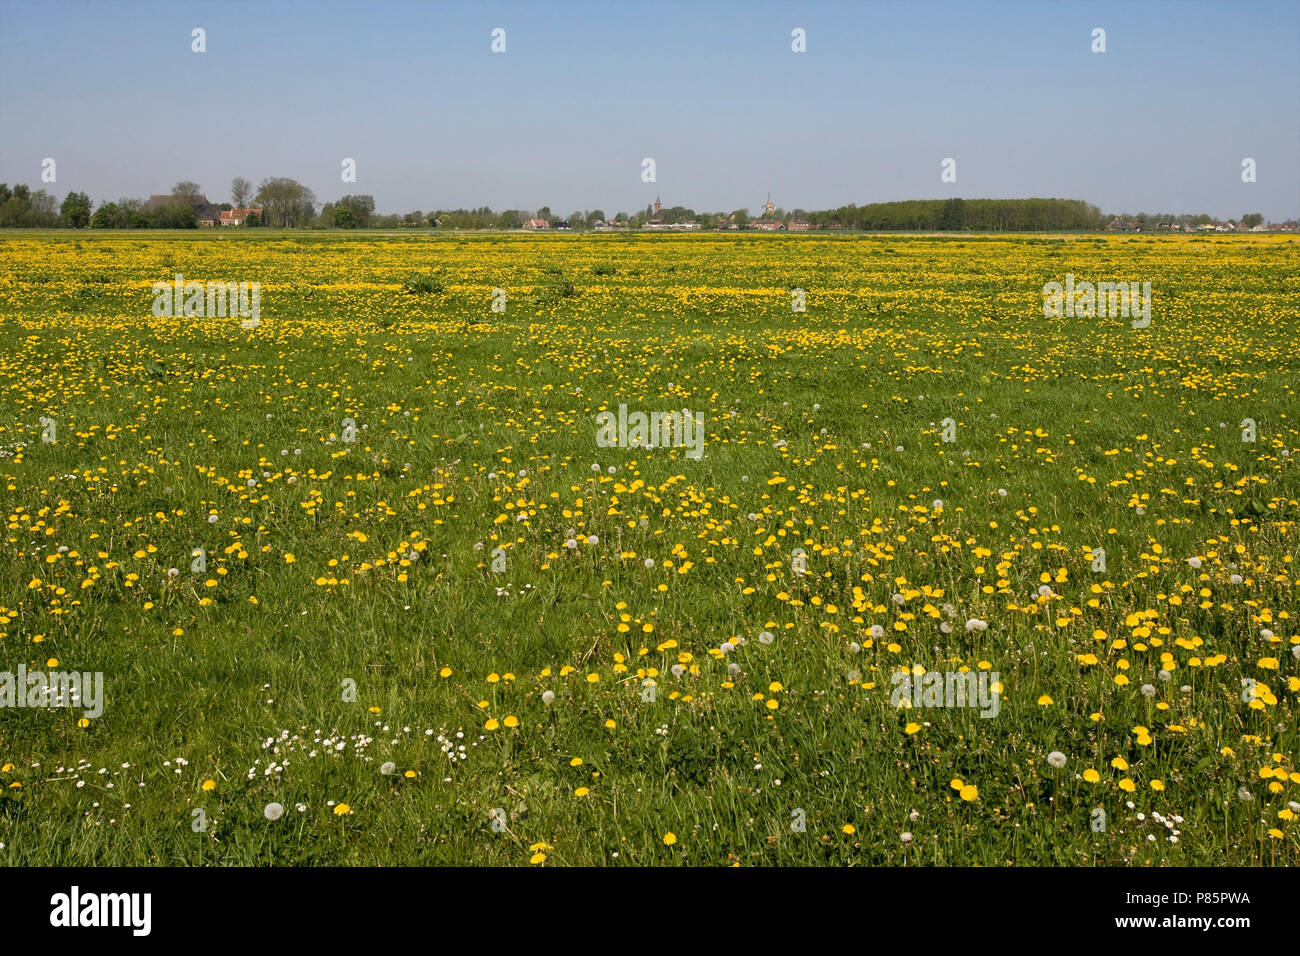 Lauwersmeer in de zomer, Lauwersmeer in summer Stock Photo